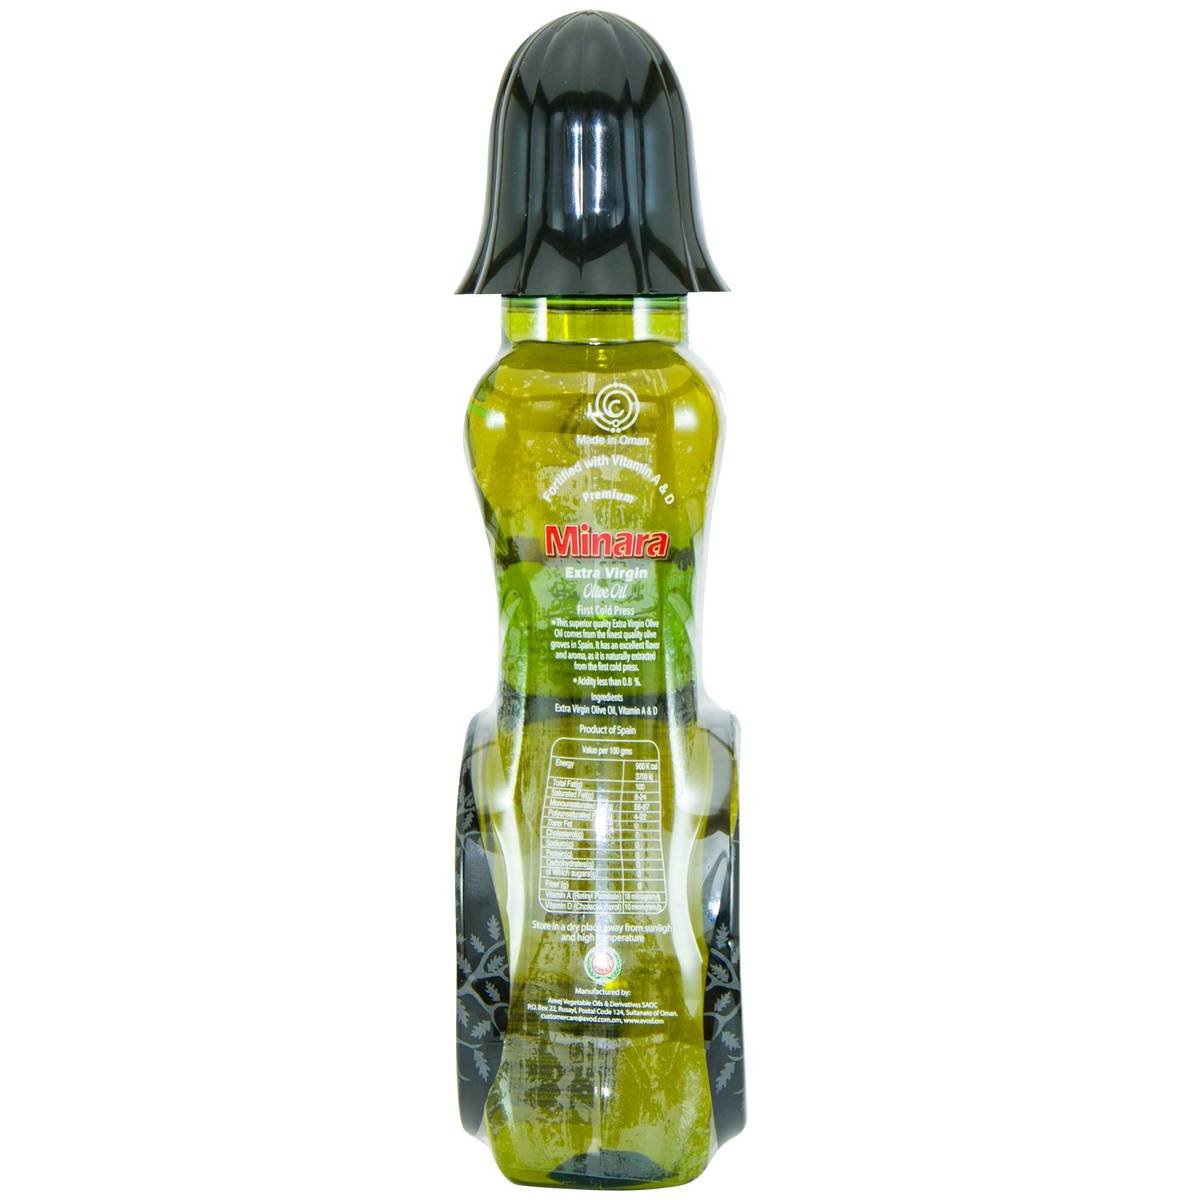 Minara Extra Virgin Olive Oil 500ml